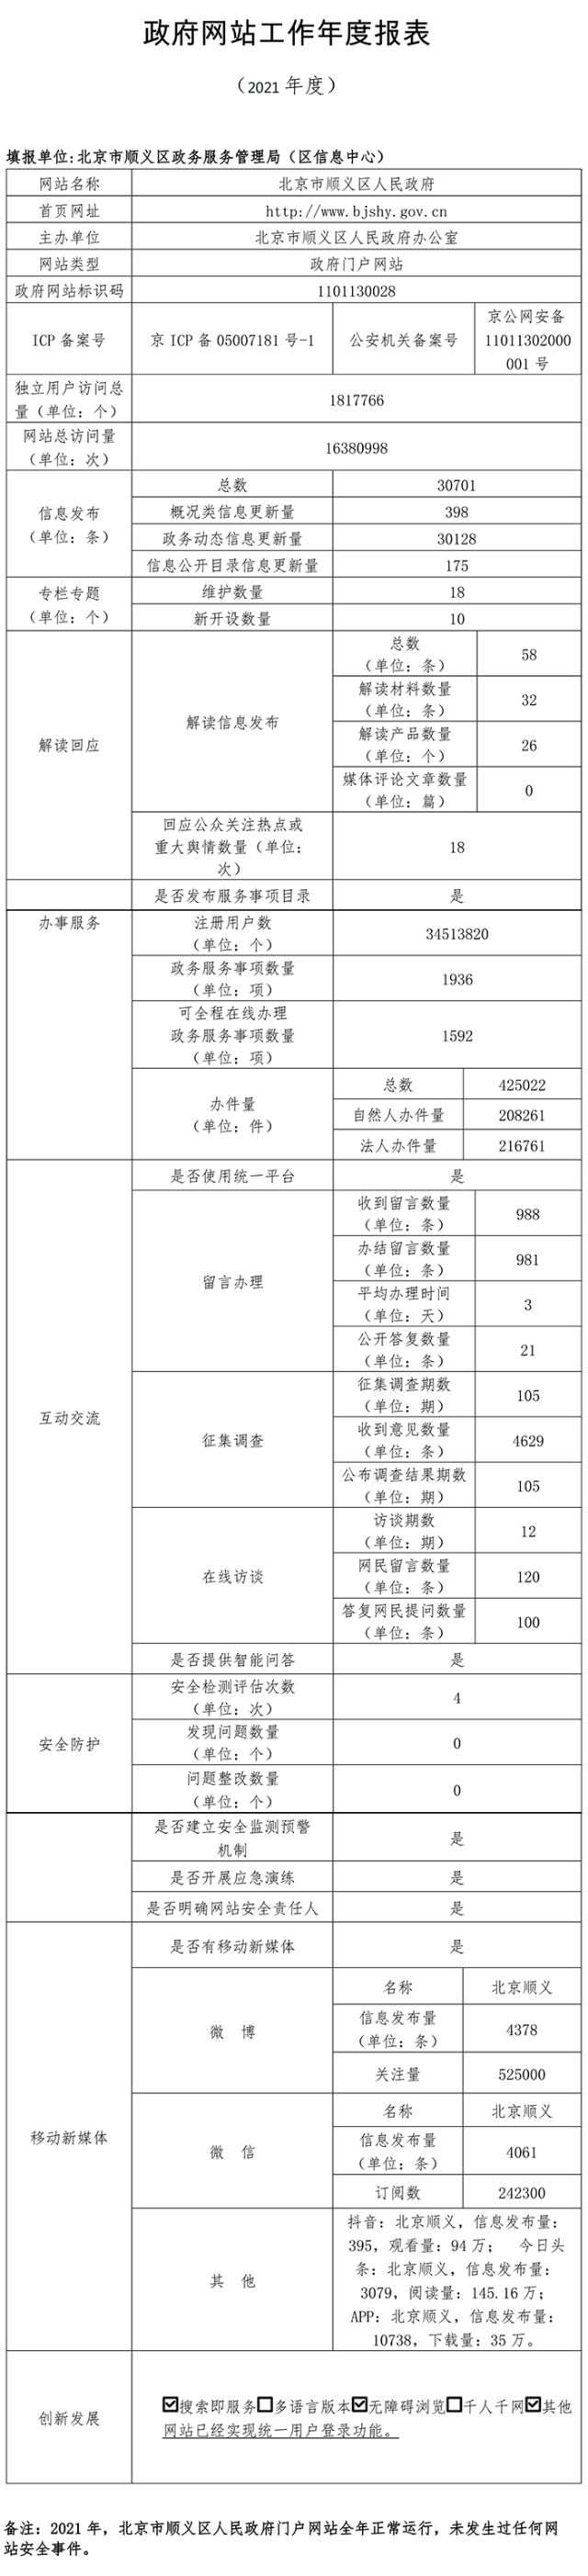 北京市順義區人民政府2021年政府網站年度工作報表